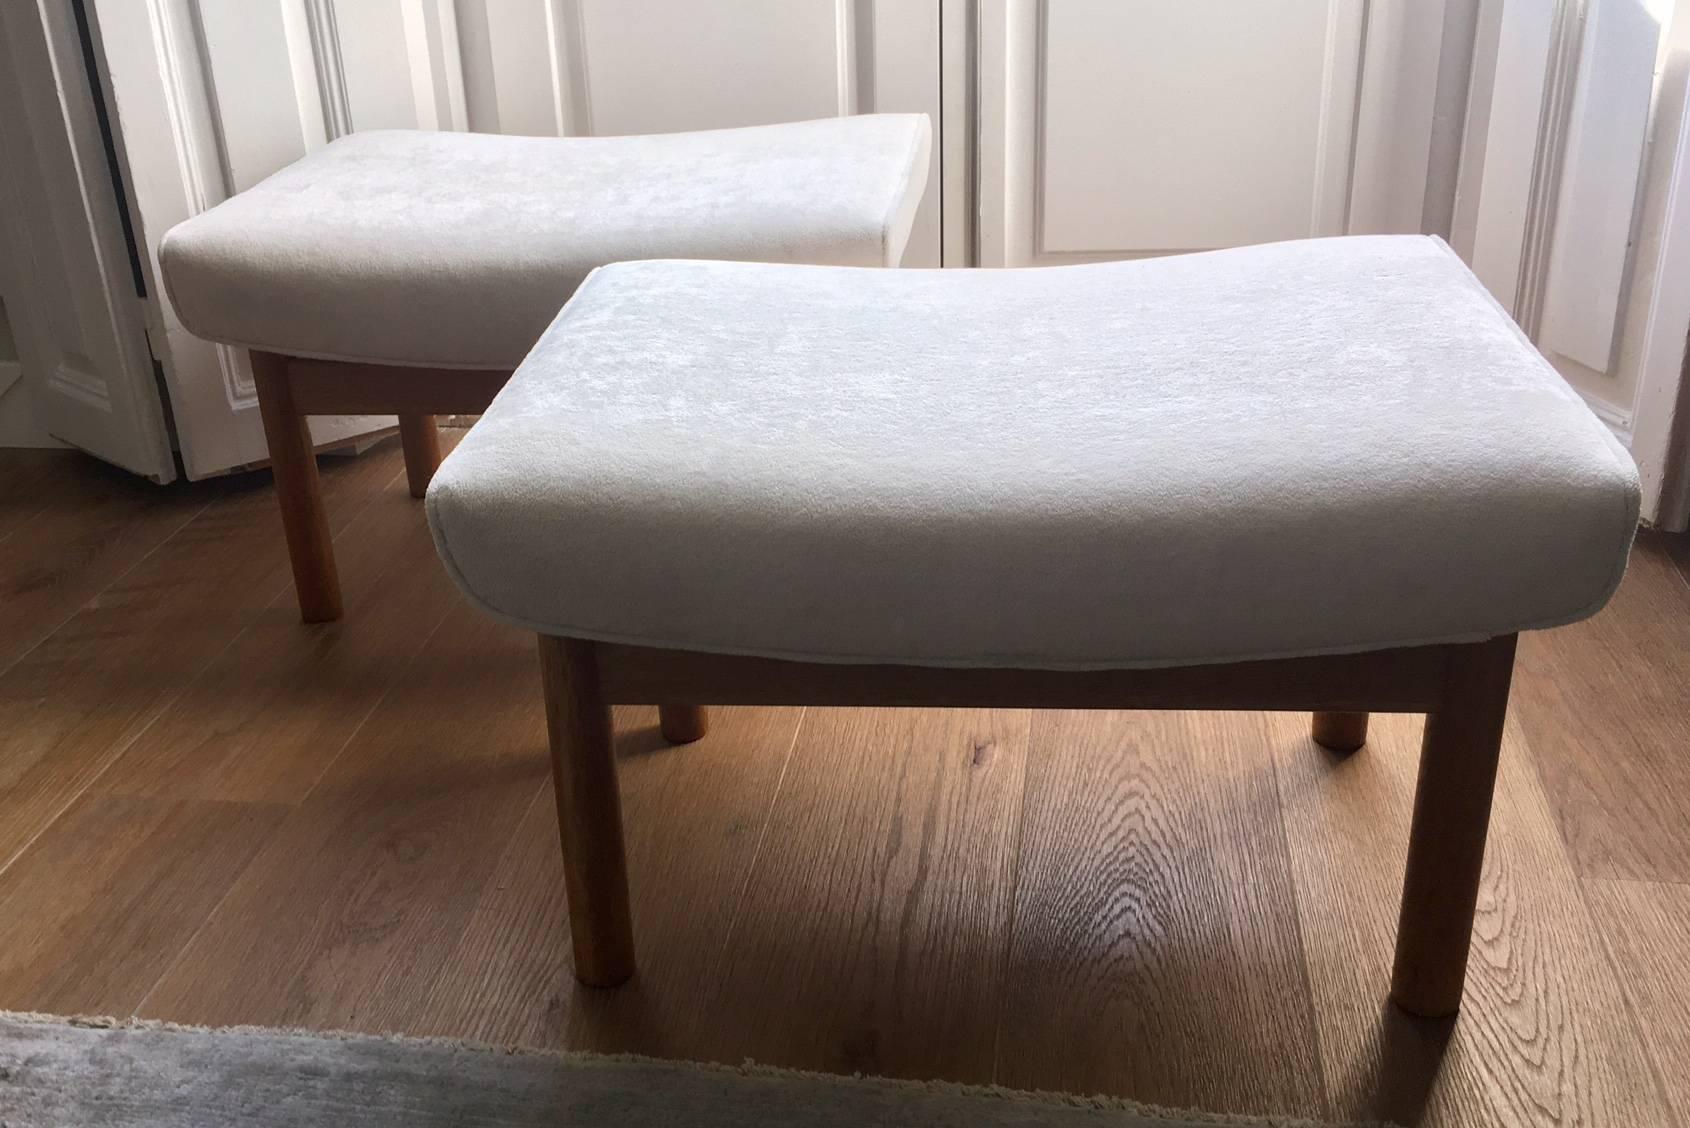 Ein Paar Hocker von Ejner Larsen und Aksel Bender, hergestellt von Willy Beck, Kopenhagen, Dänemark 1961. Gestell aus Eichenholz, gepolstert mit weißem Veloursstoff. Die Sitze sind auf der Unterseite mit den Namen des Herstellers und der Architekten